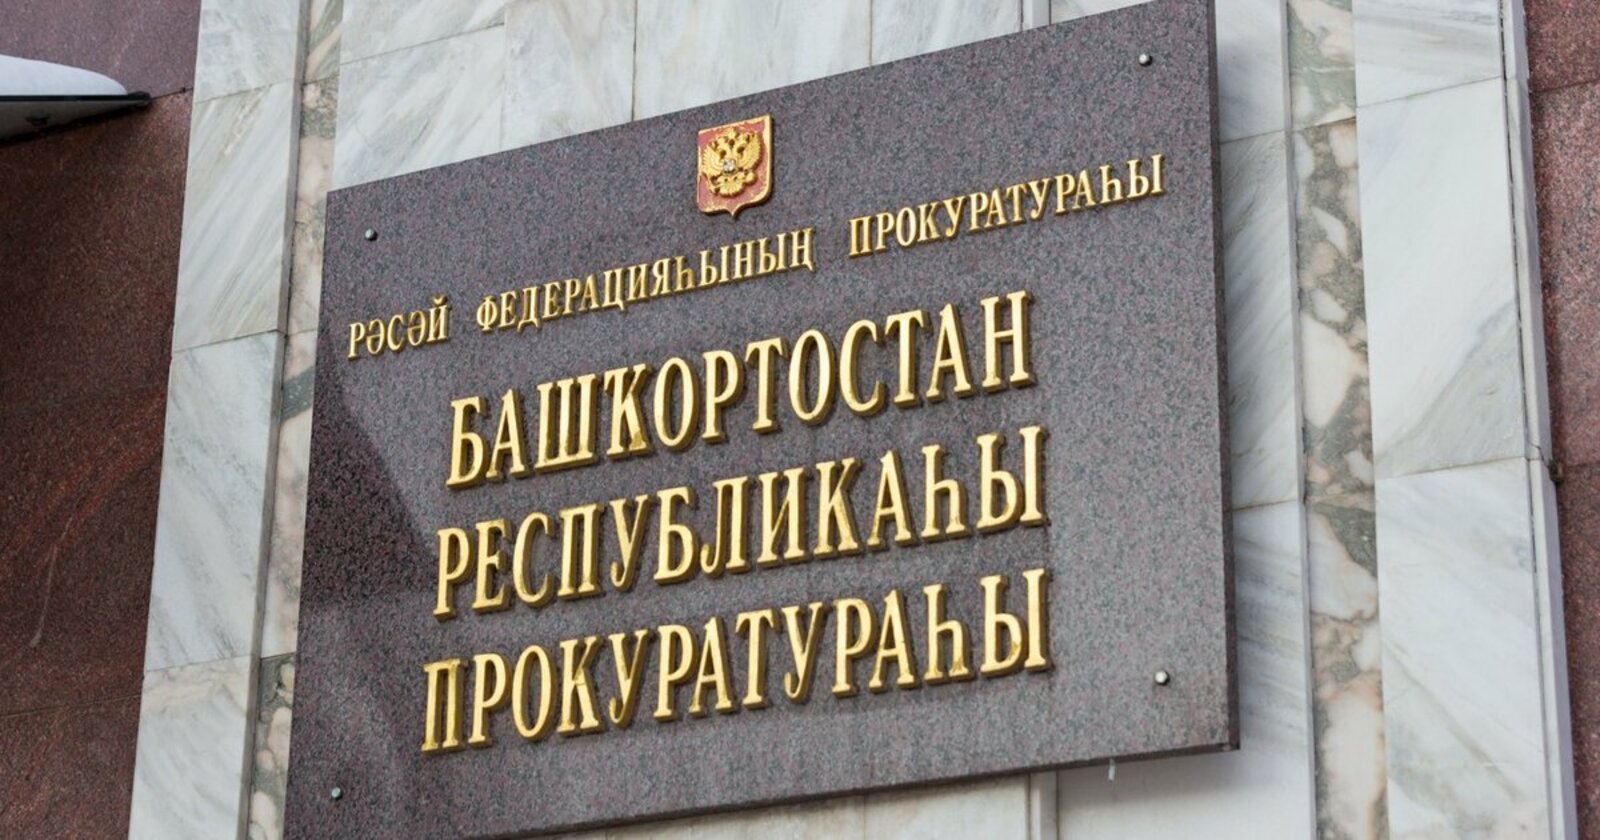 Прокуратура Башкирии возбудила уголовное дело в отношении управляющей компании Баймака